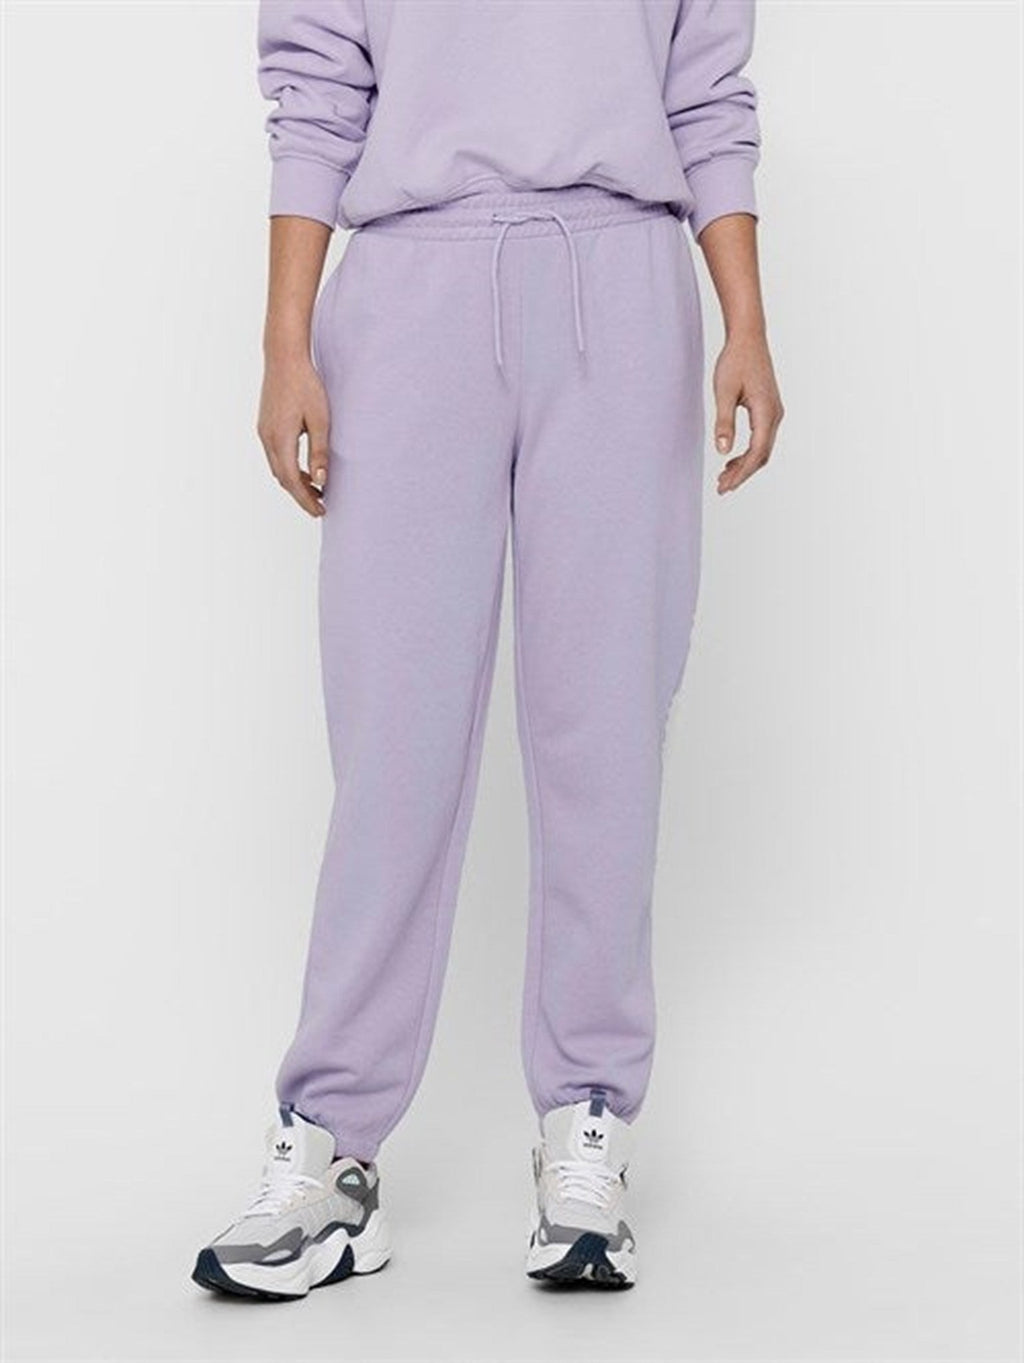 Sweatpants Comfy - Pastel Purple